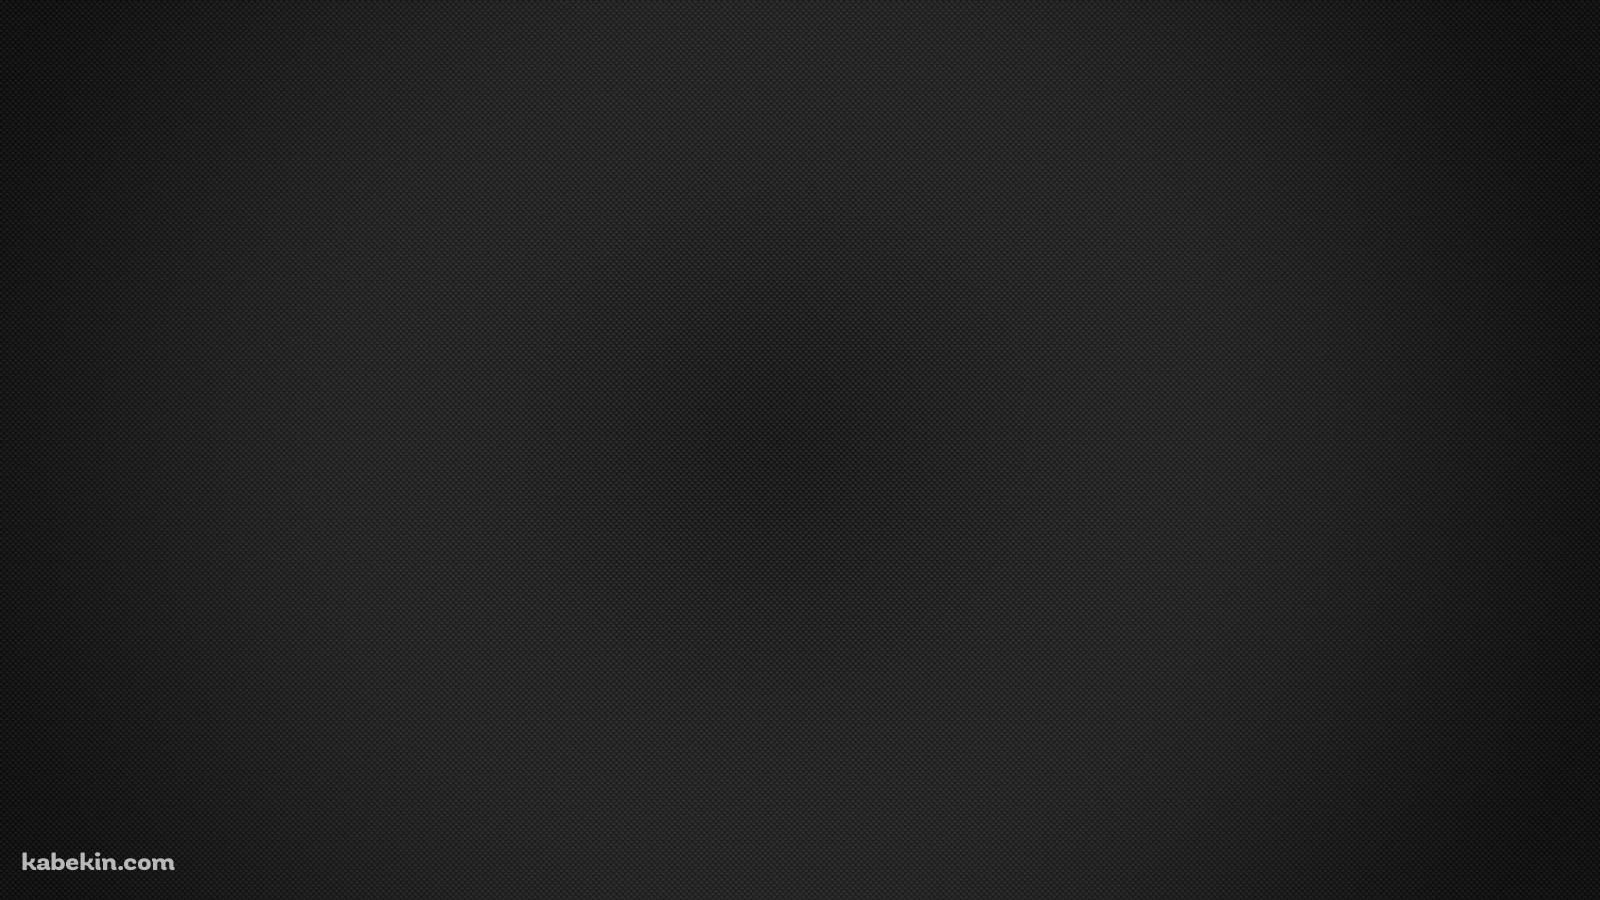 シンプルな黒のドットの集合体の壁紙(1600px x 900px) 高画質 PC・デスクトップ用